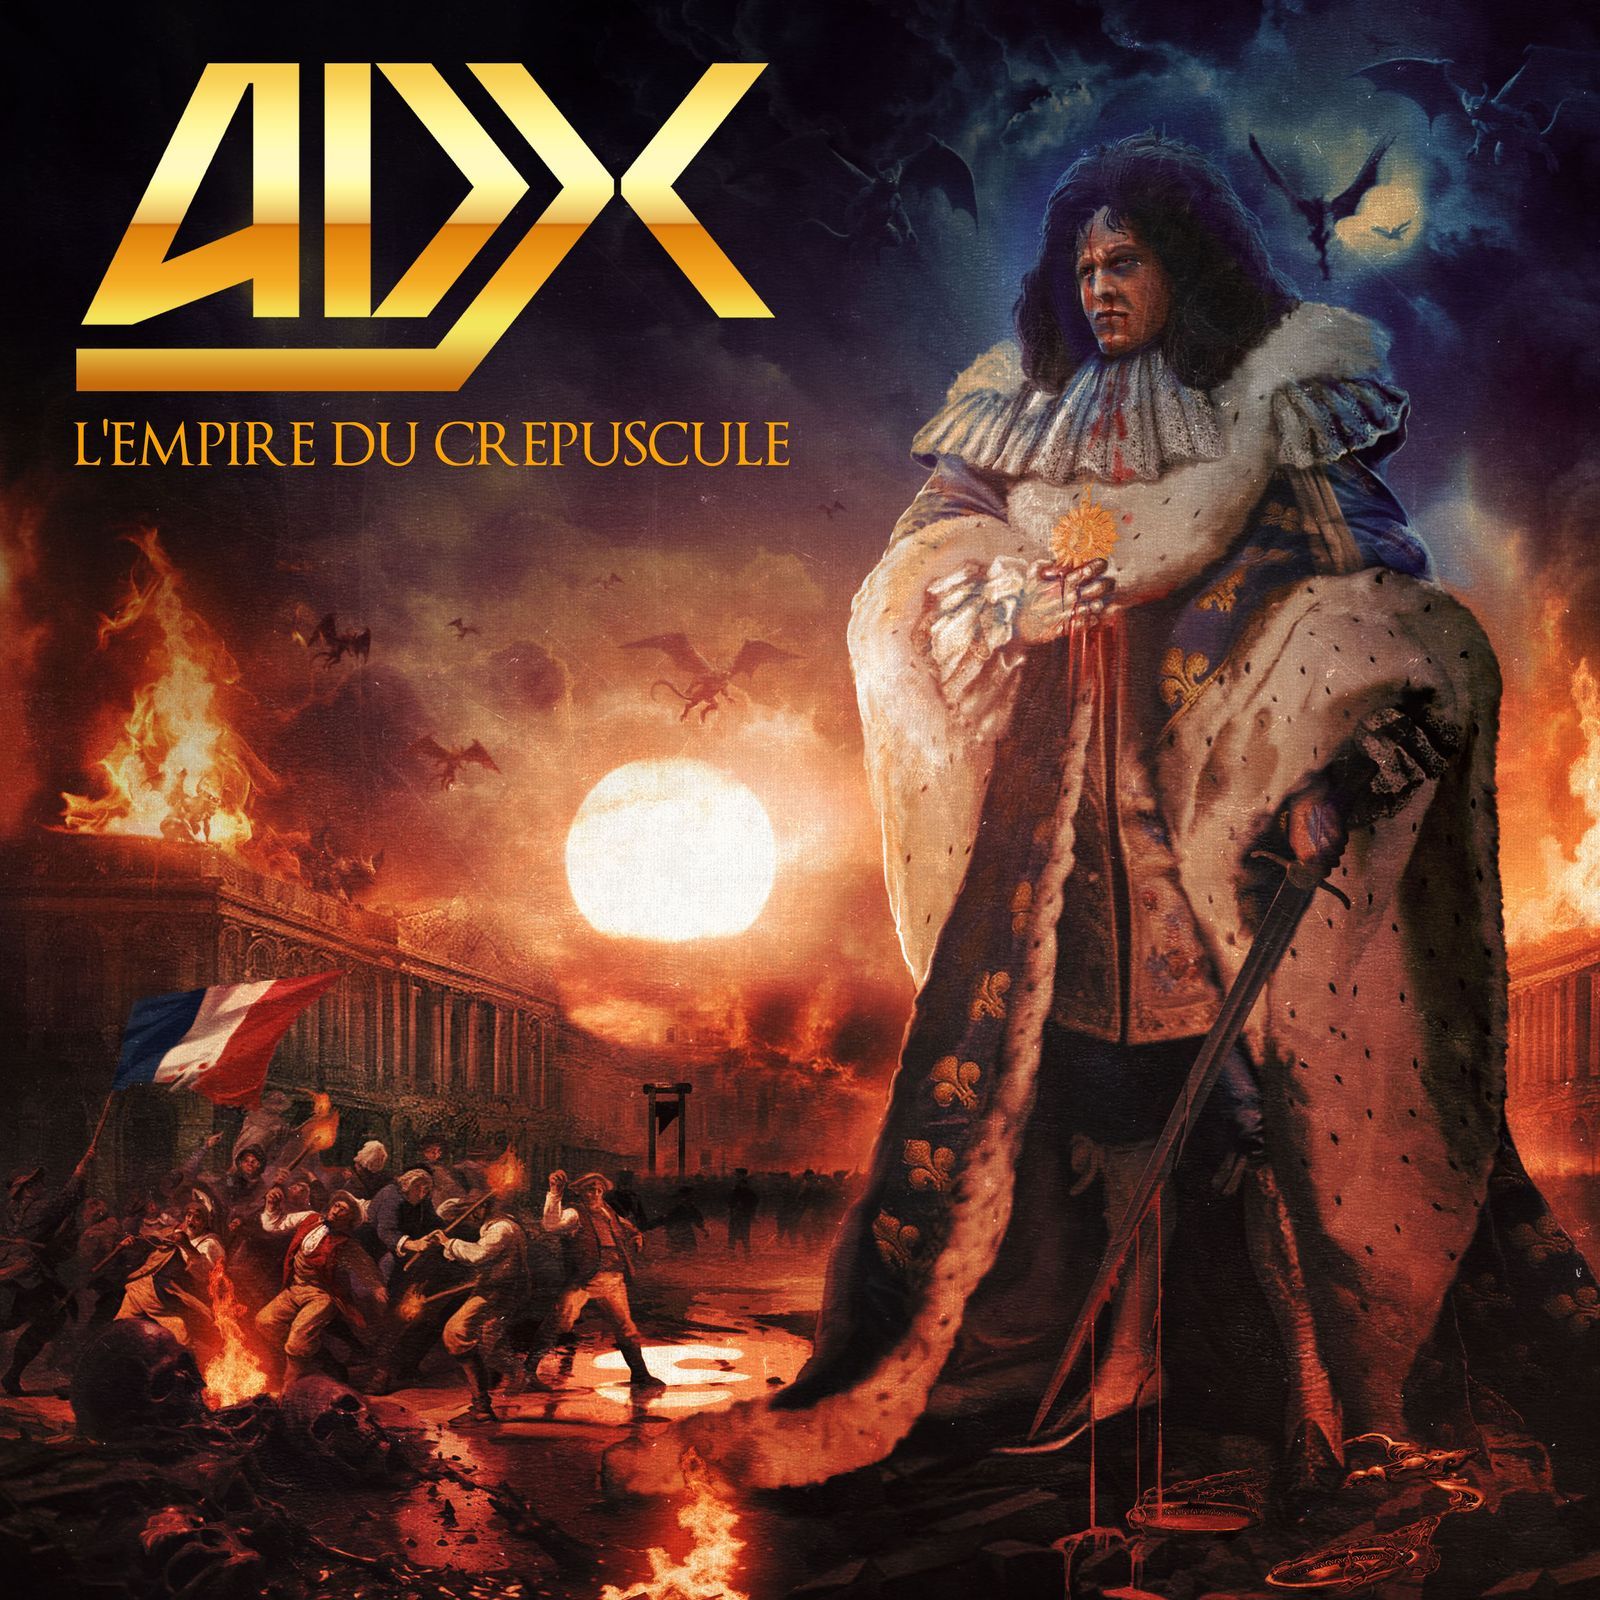 ADX - Tout en puissance (audio)